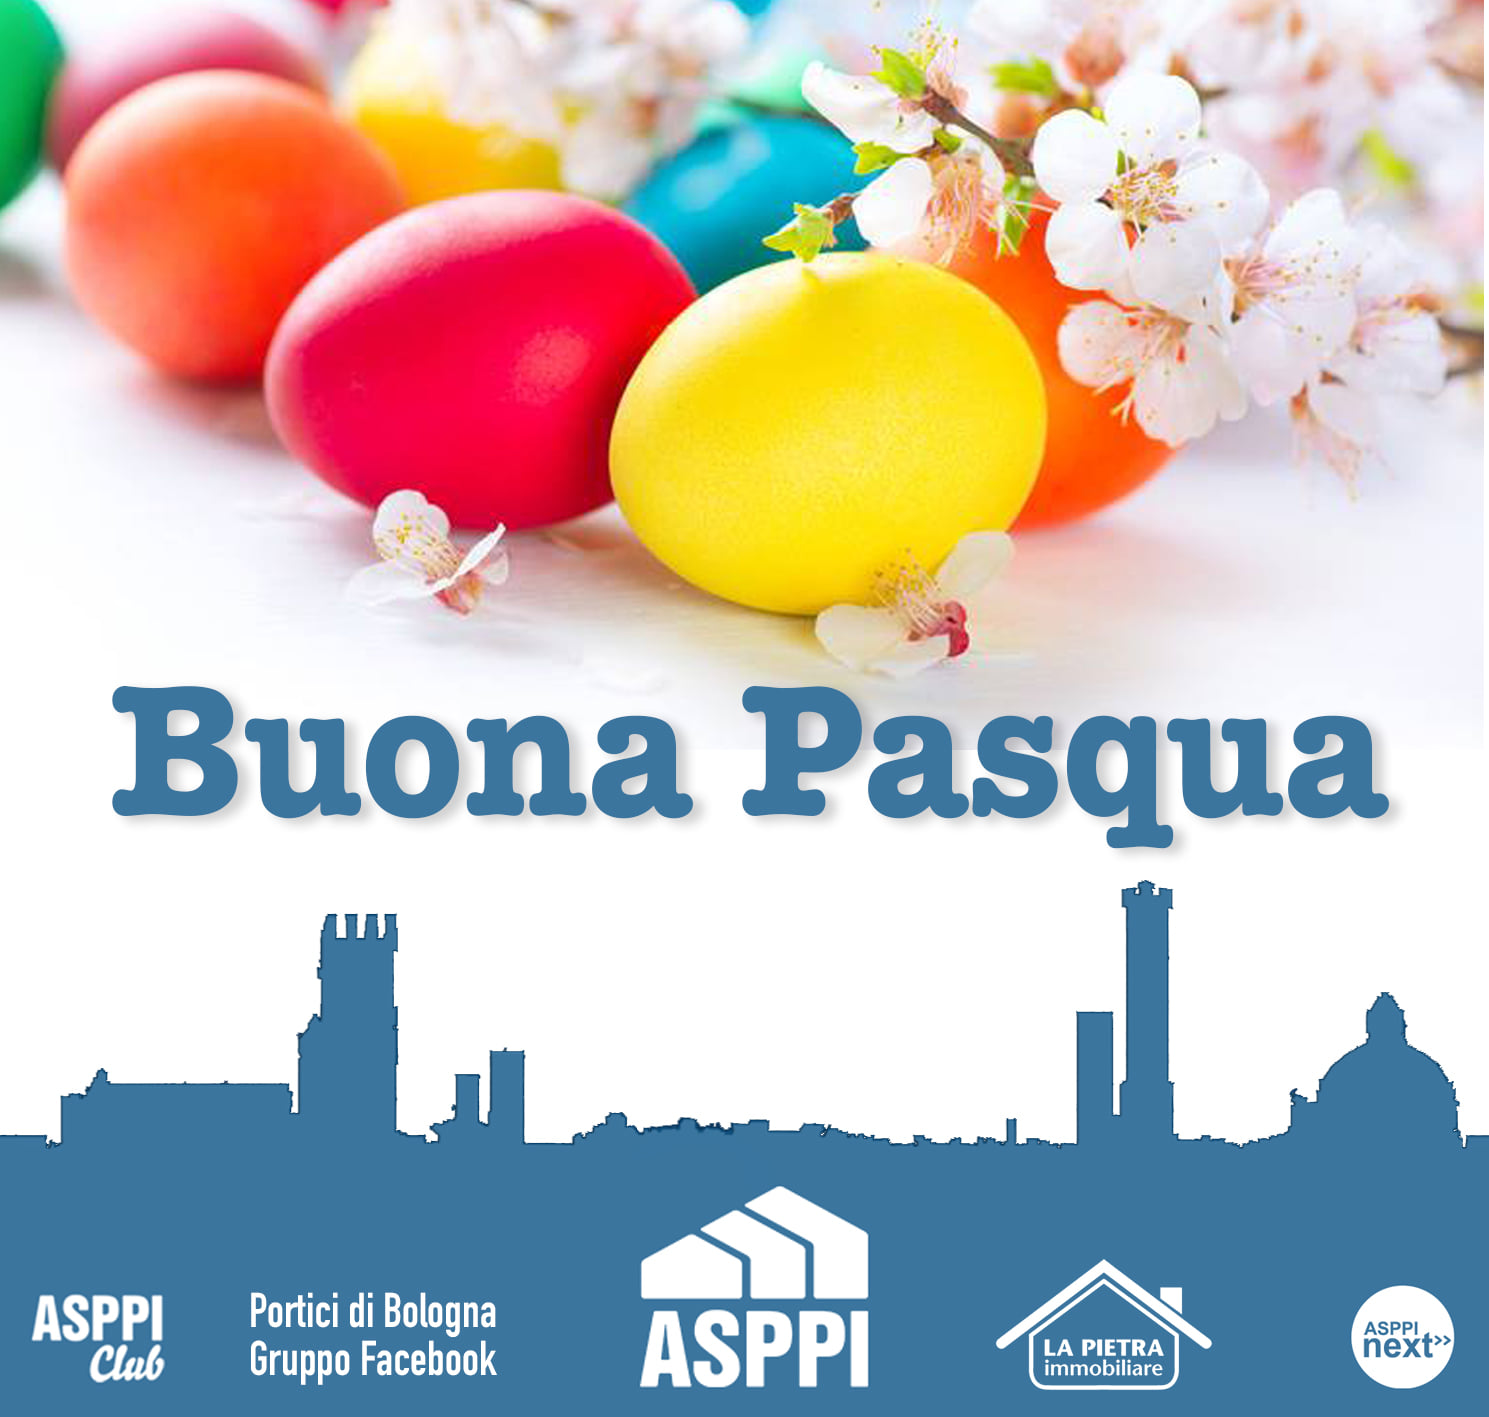 Buona Pasqua da ASPPI – La Pietra Immobiliare – ASPPI Club – Gruppo Facebook Portici di Bologna – ASPPInext